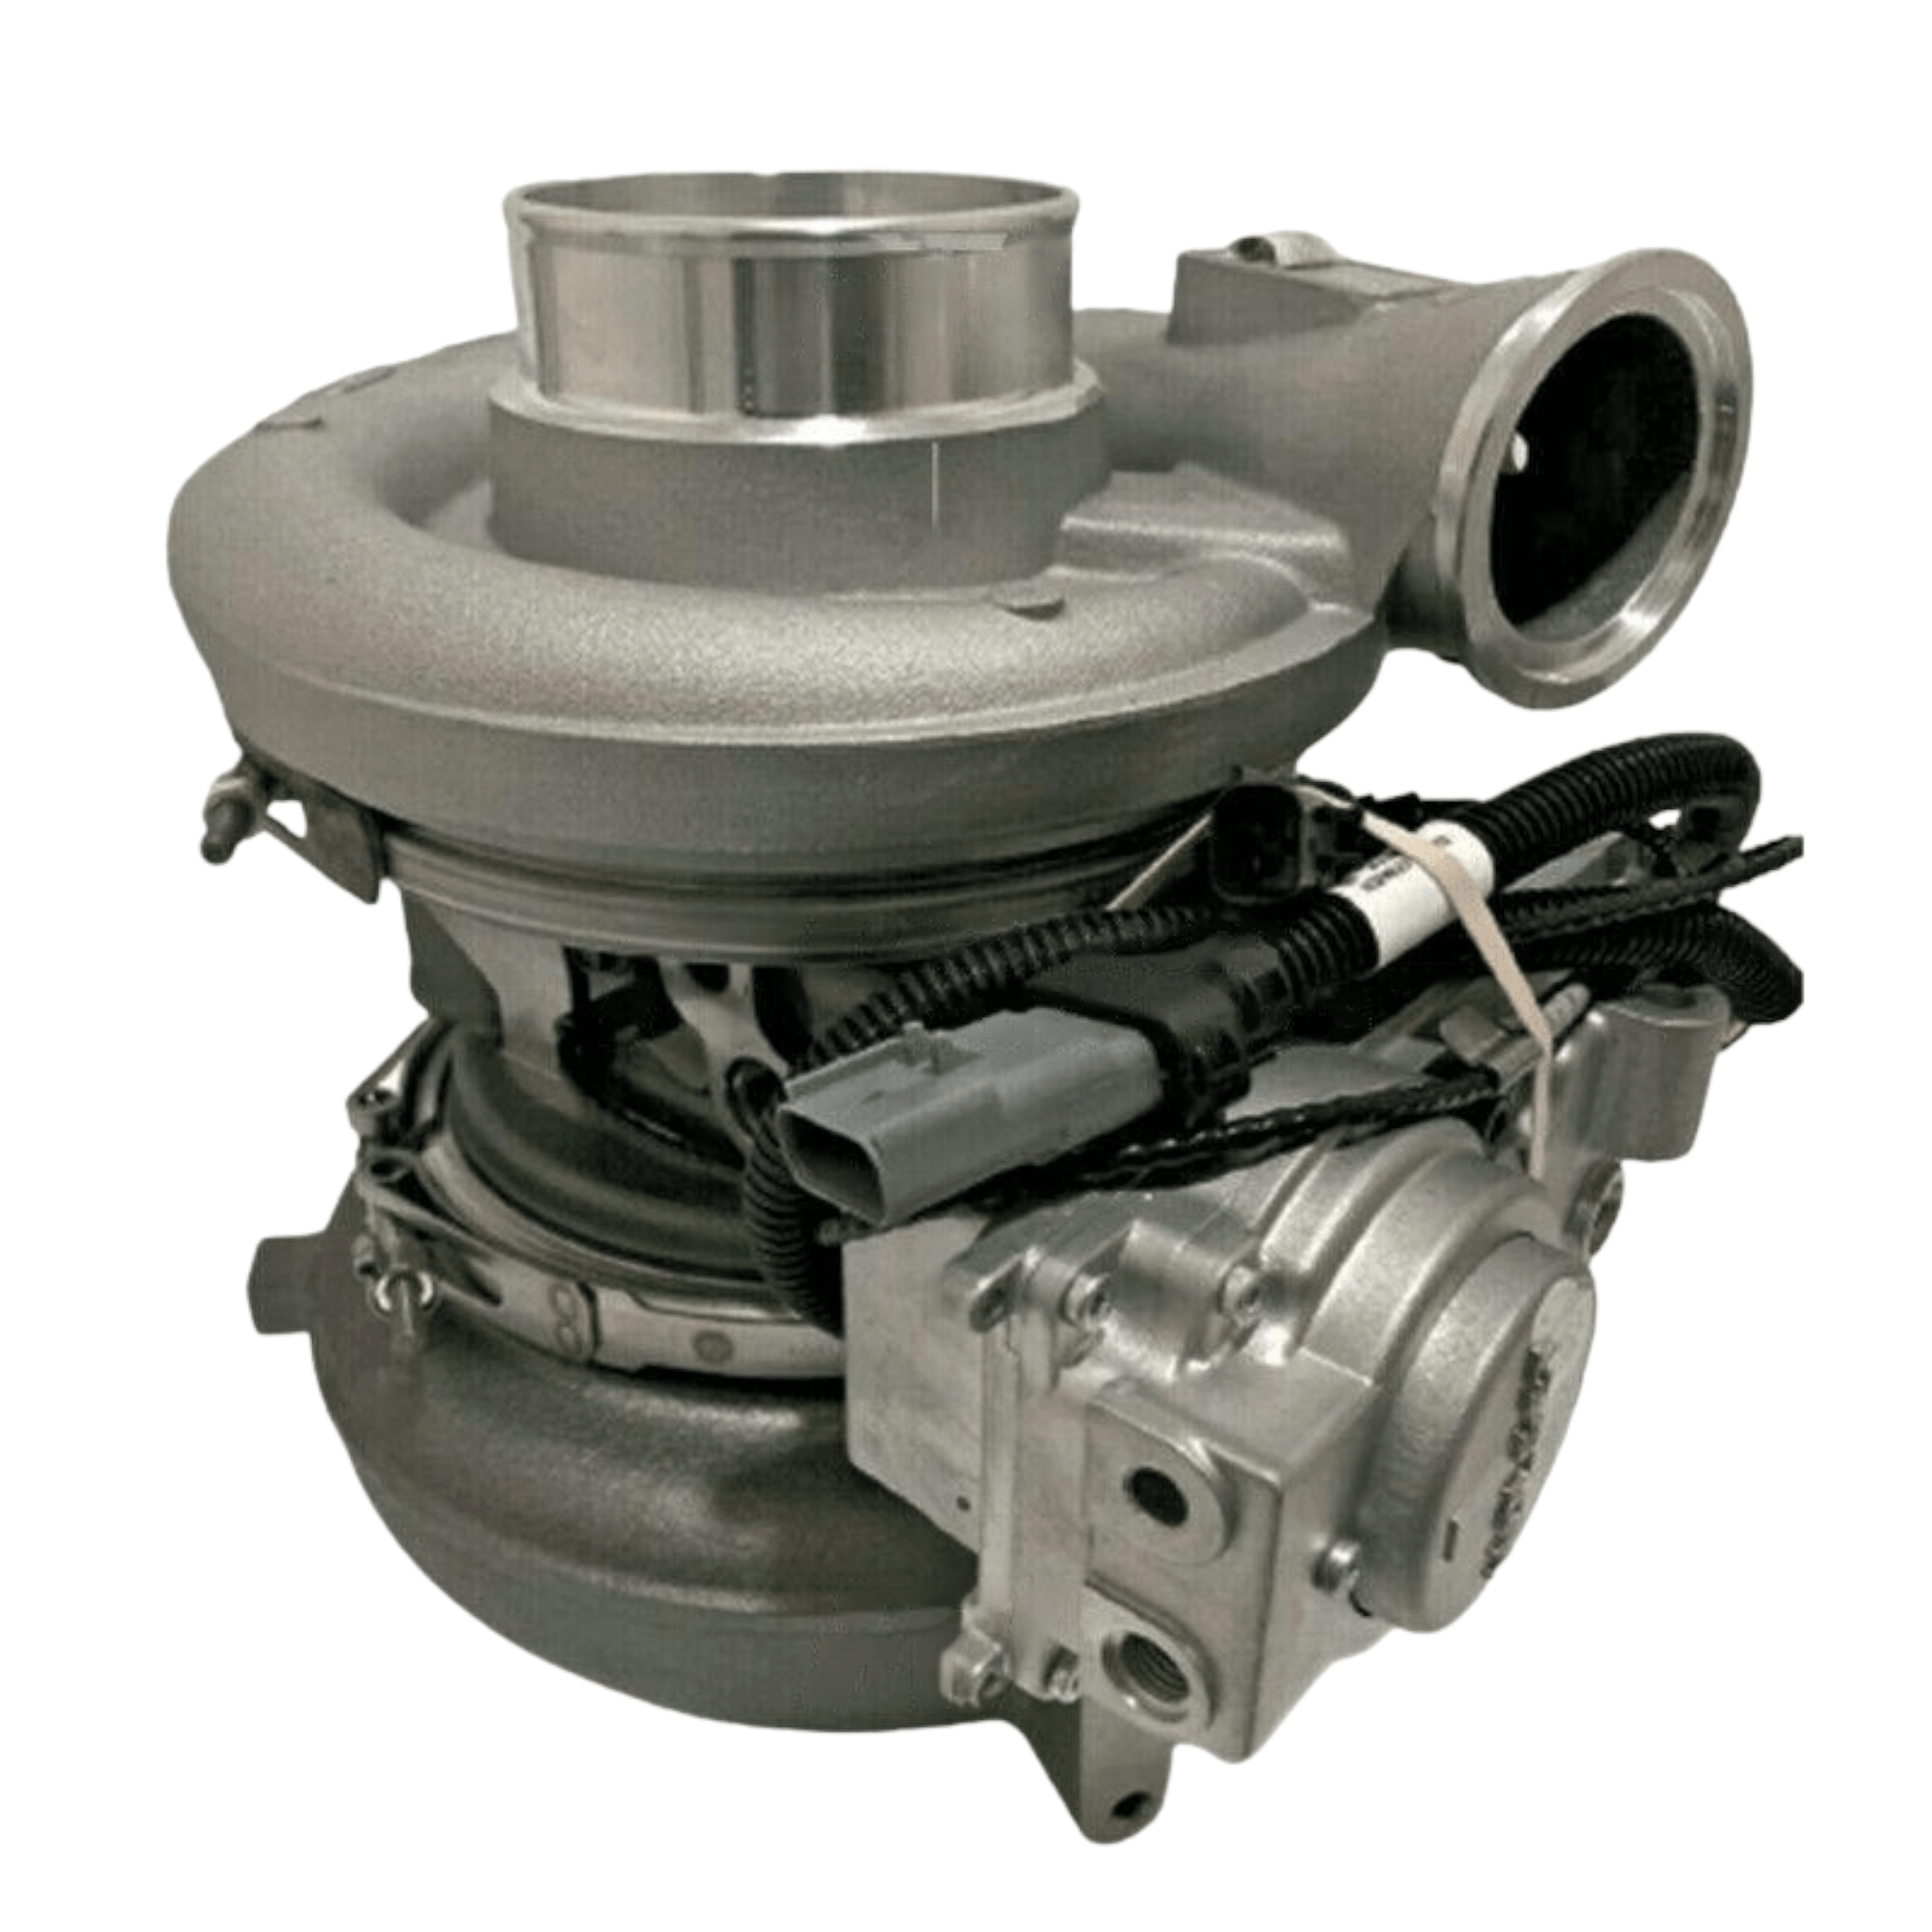 E23539570 Genuine Detroit Diesel Turbocharger For Detroit Diesel Series 60